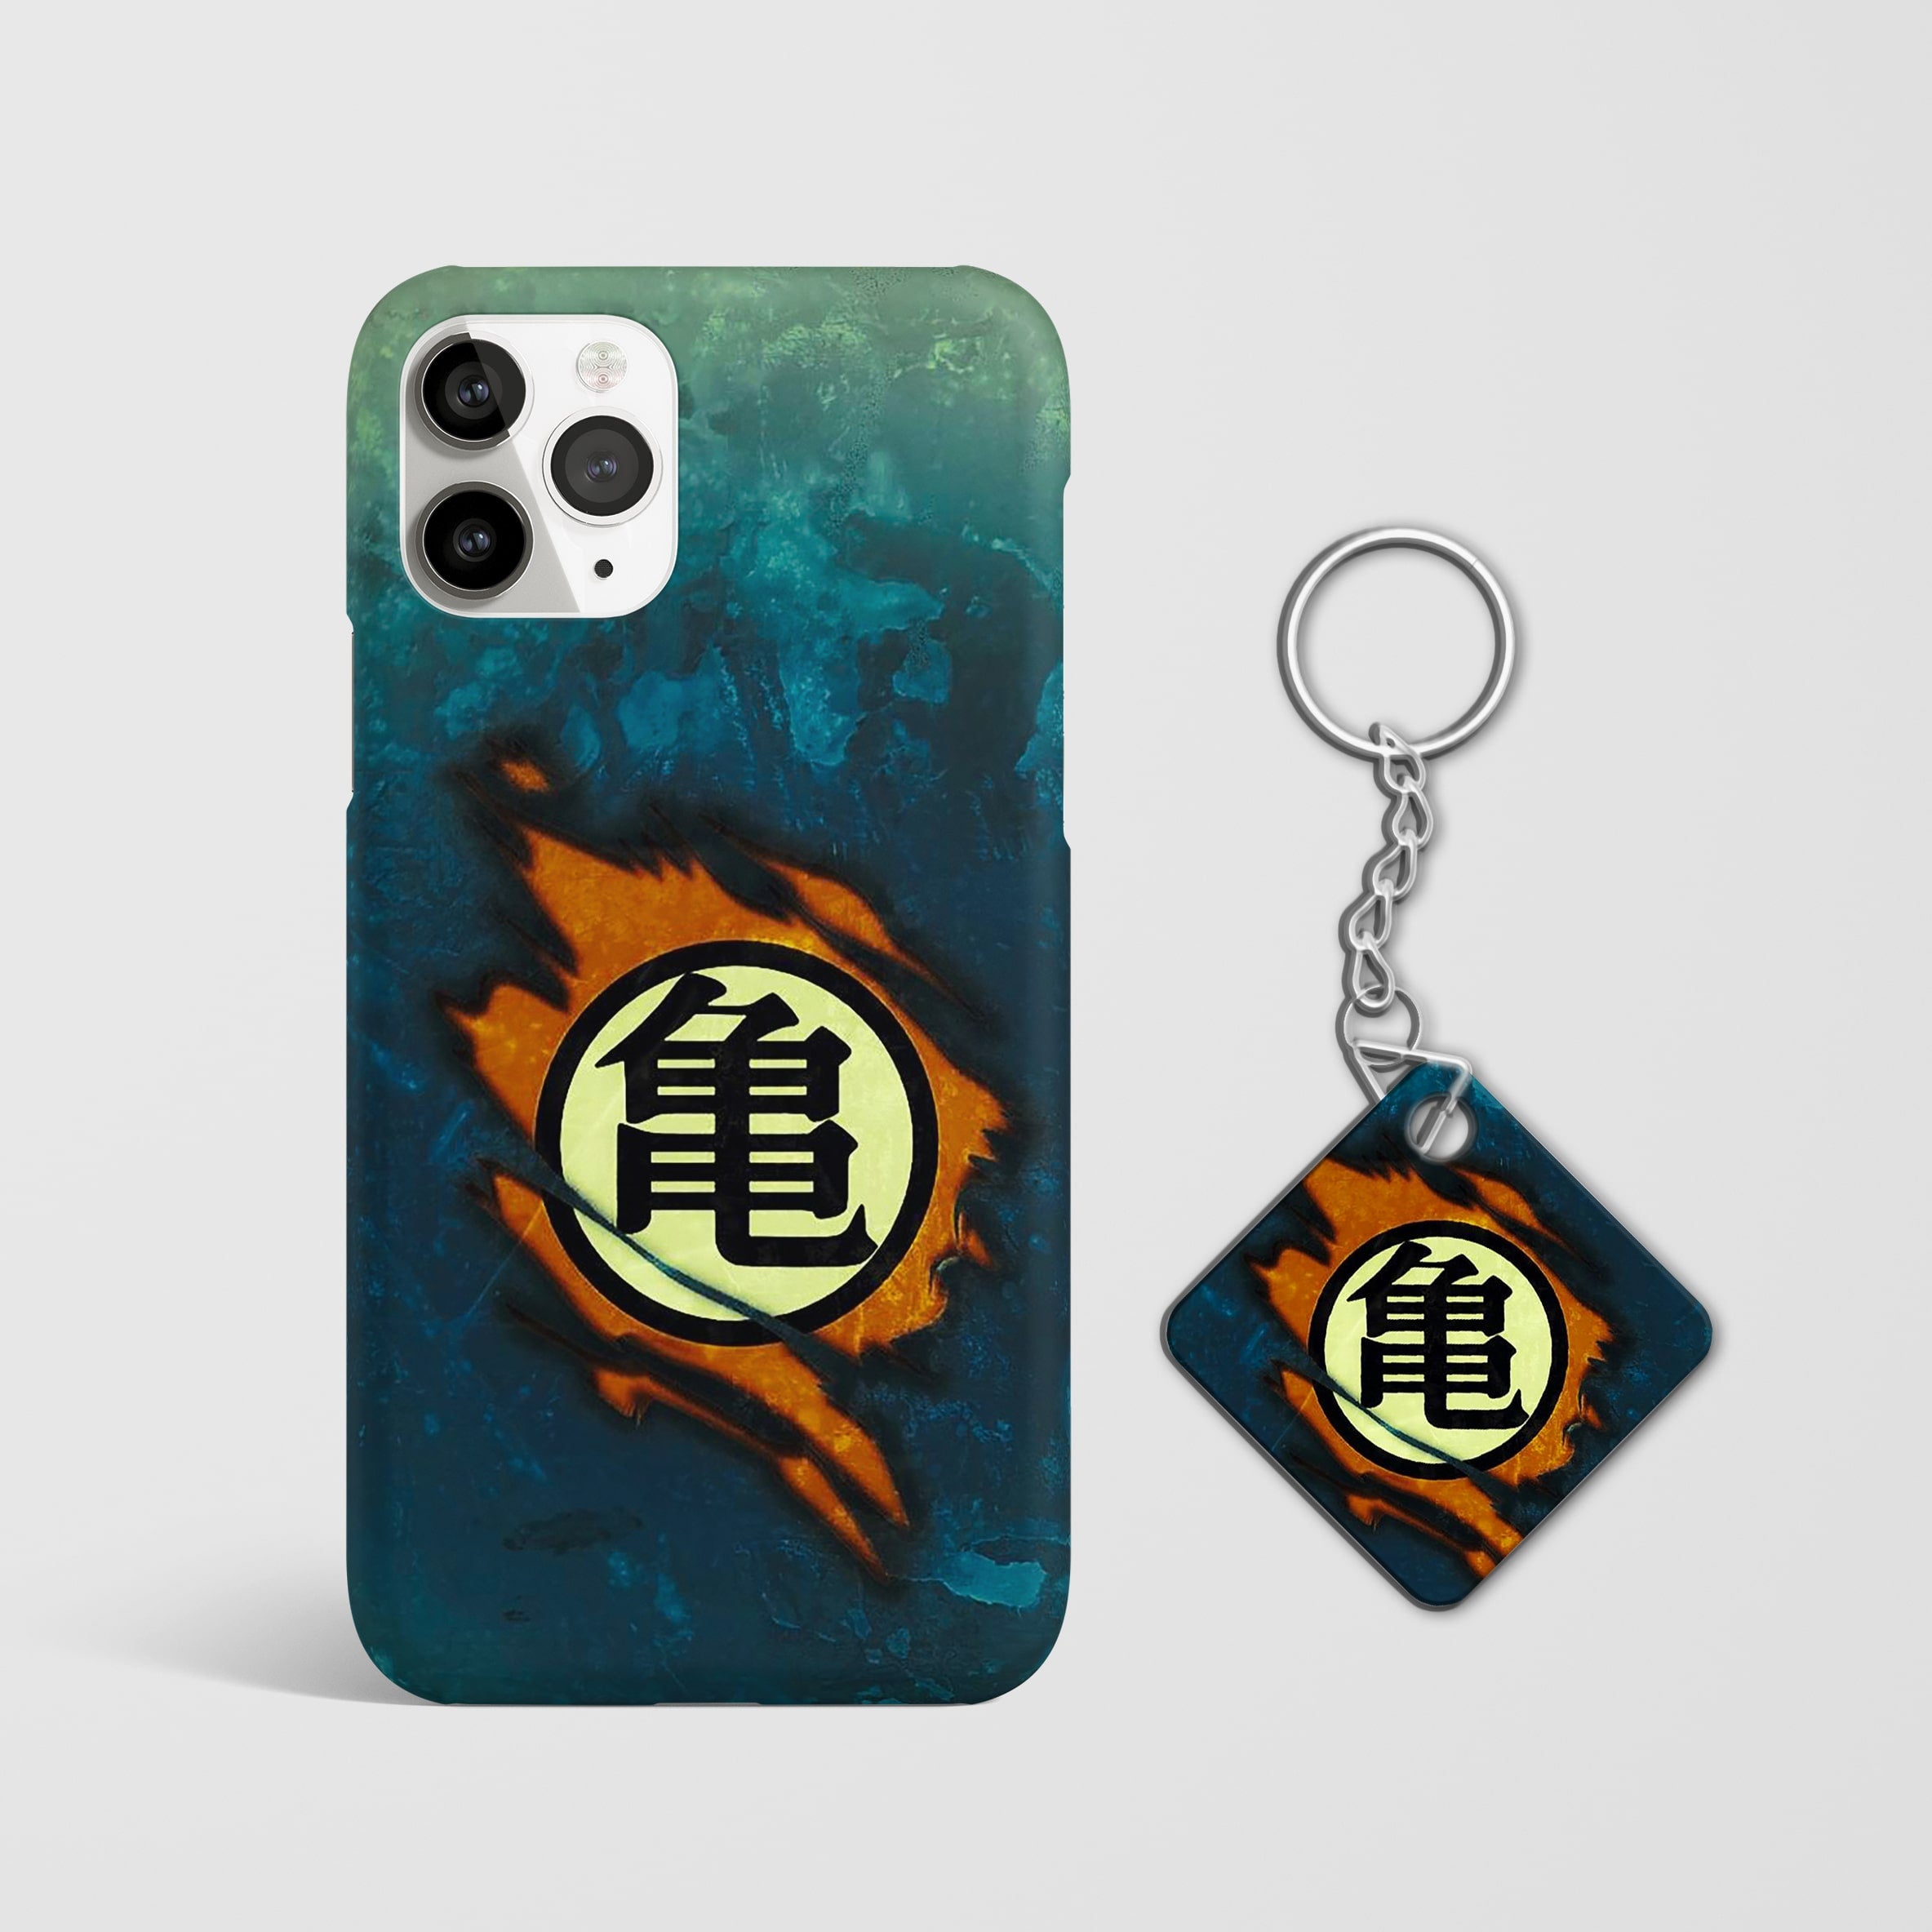 Close-up of the iconic Goku symbol on stylish phone case with Keychain.